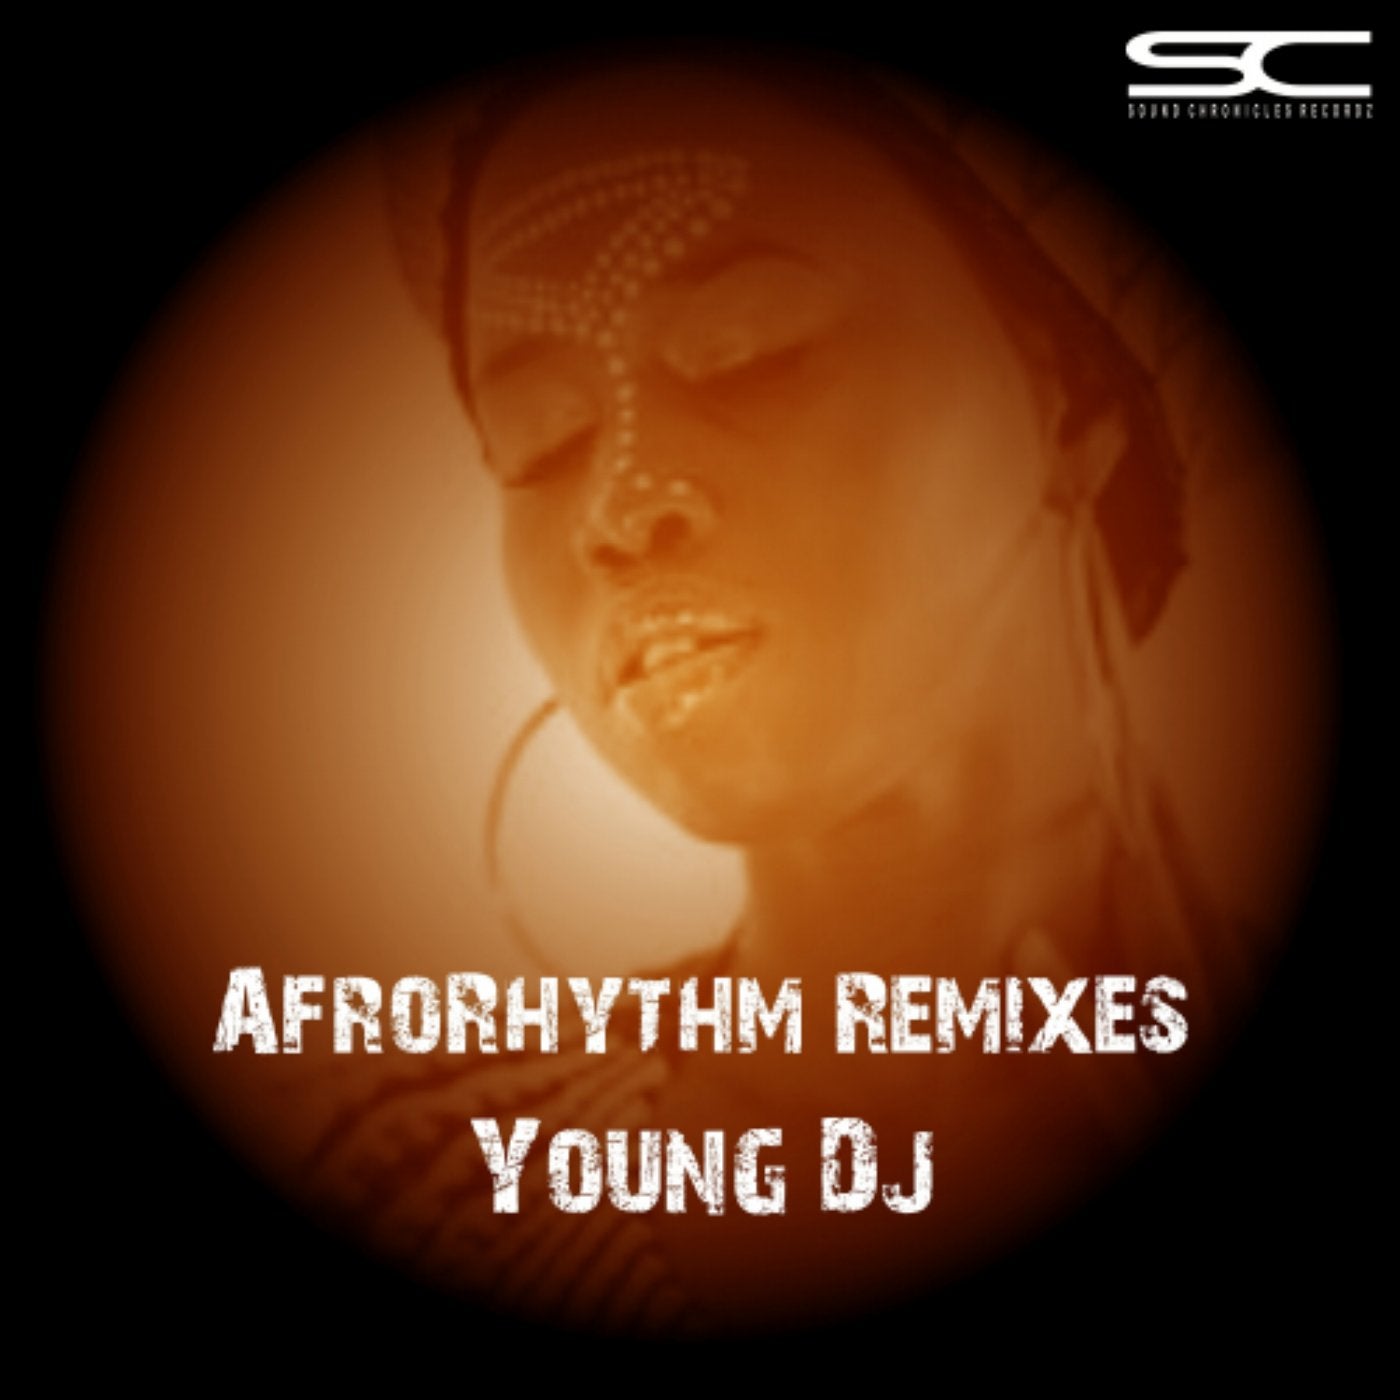 AfroRhythm Remixes